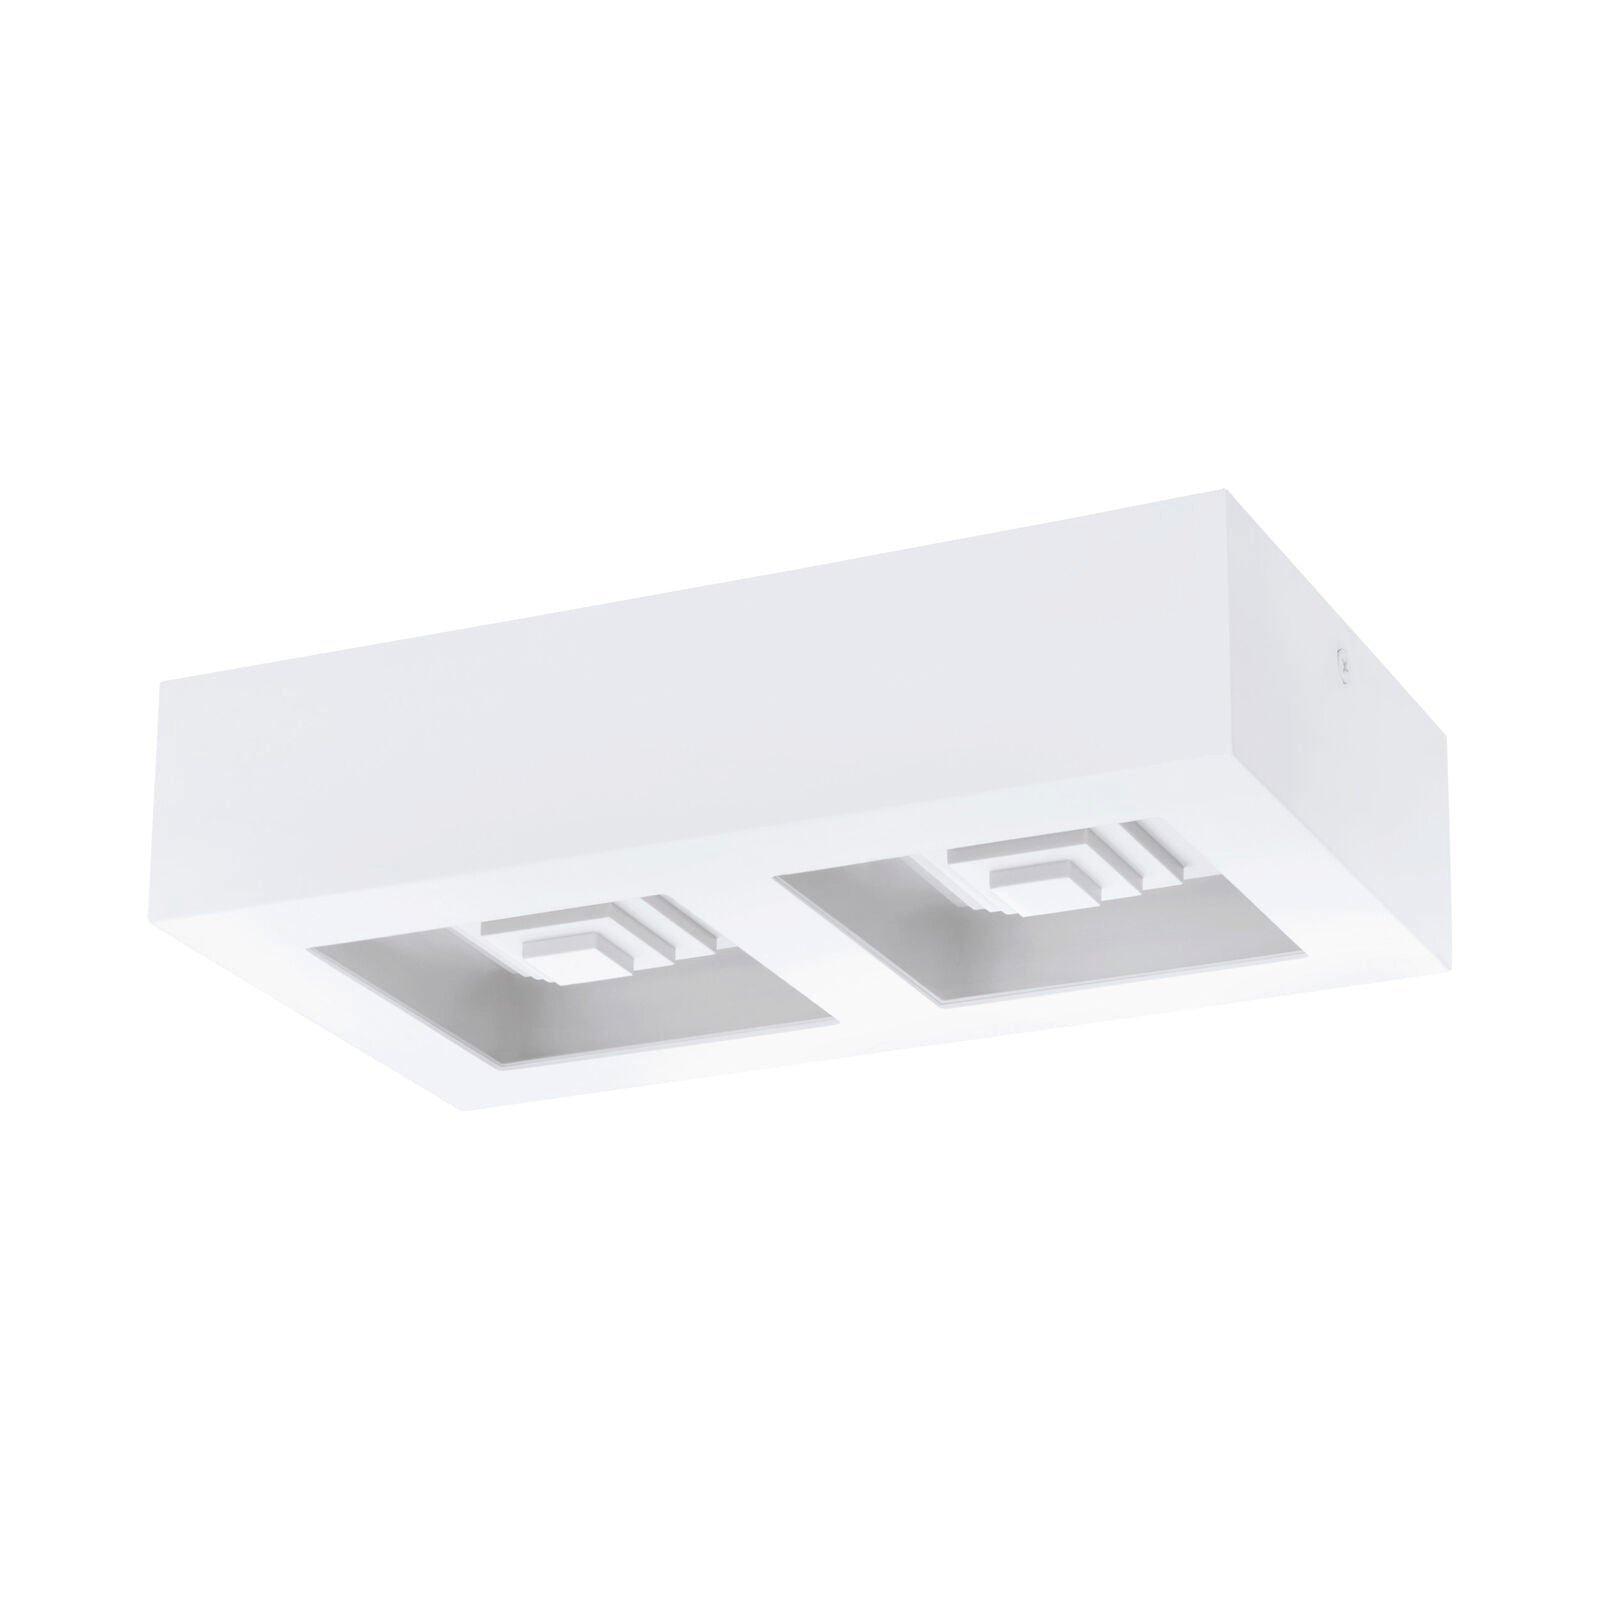 Wall / Ceiling Light Modern White Box Lamp 255mm x 140mm 6.3W Built in LED